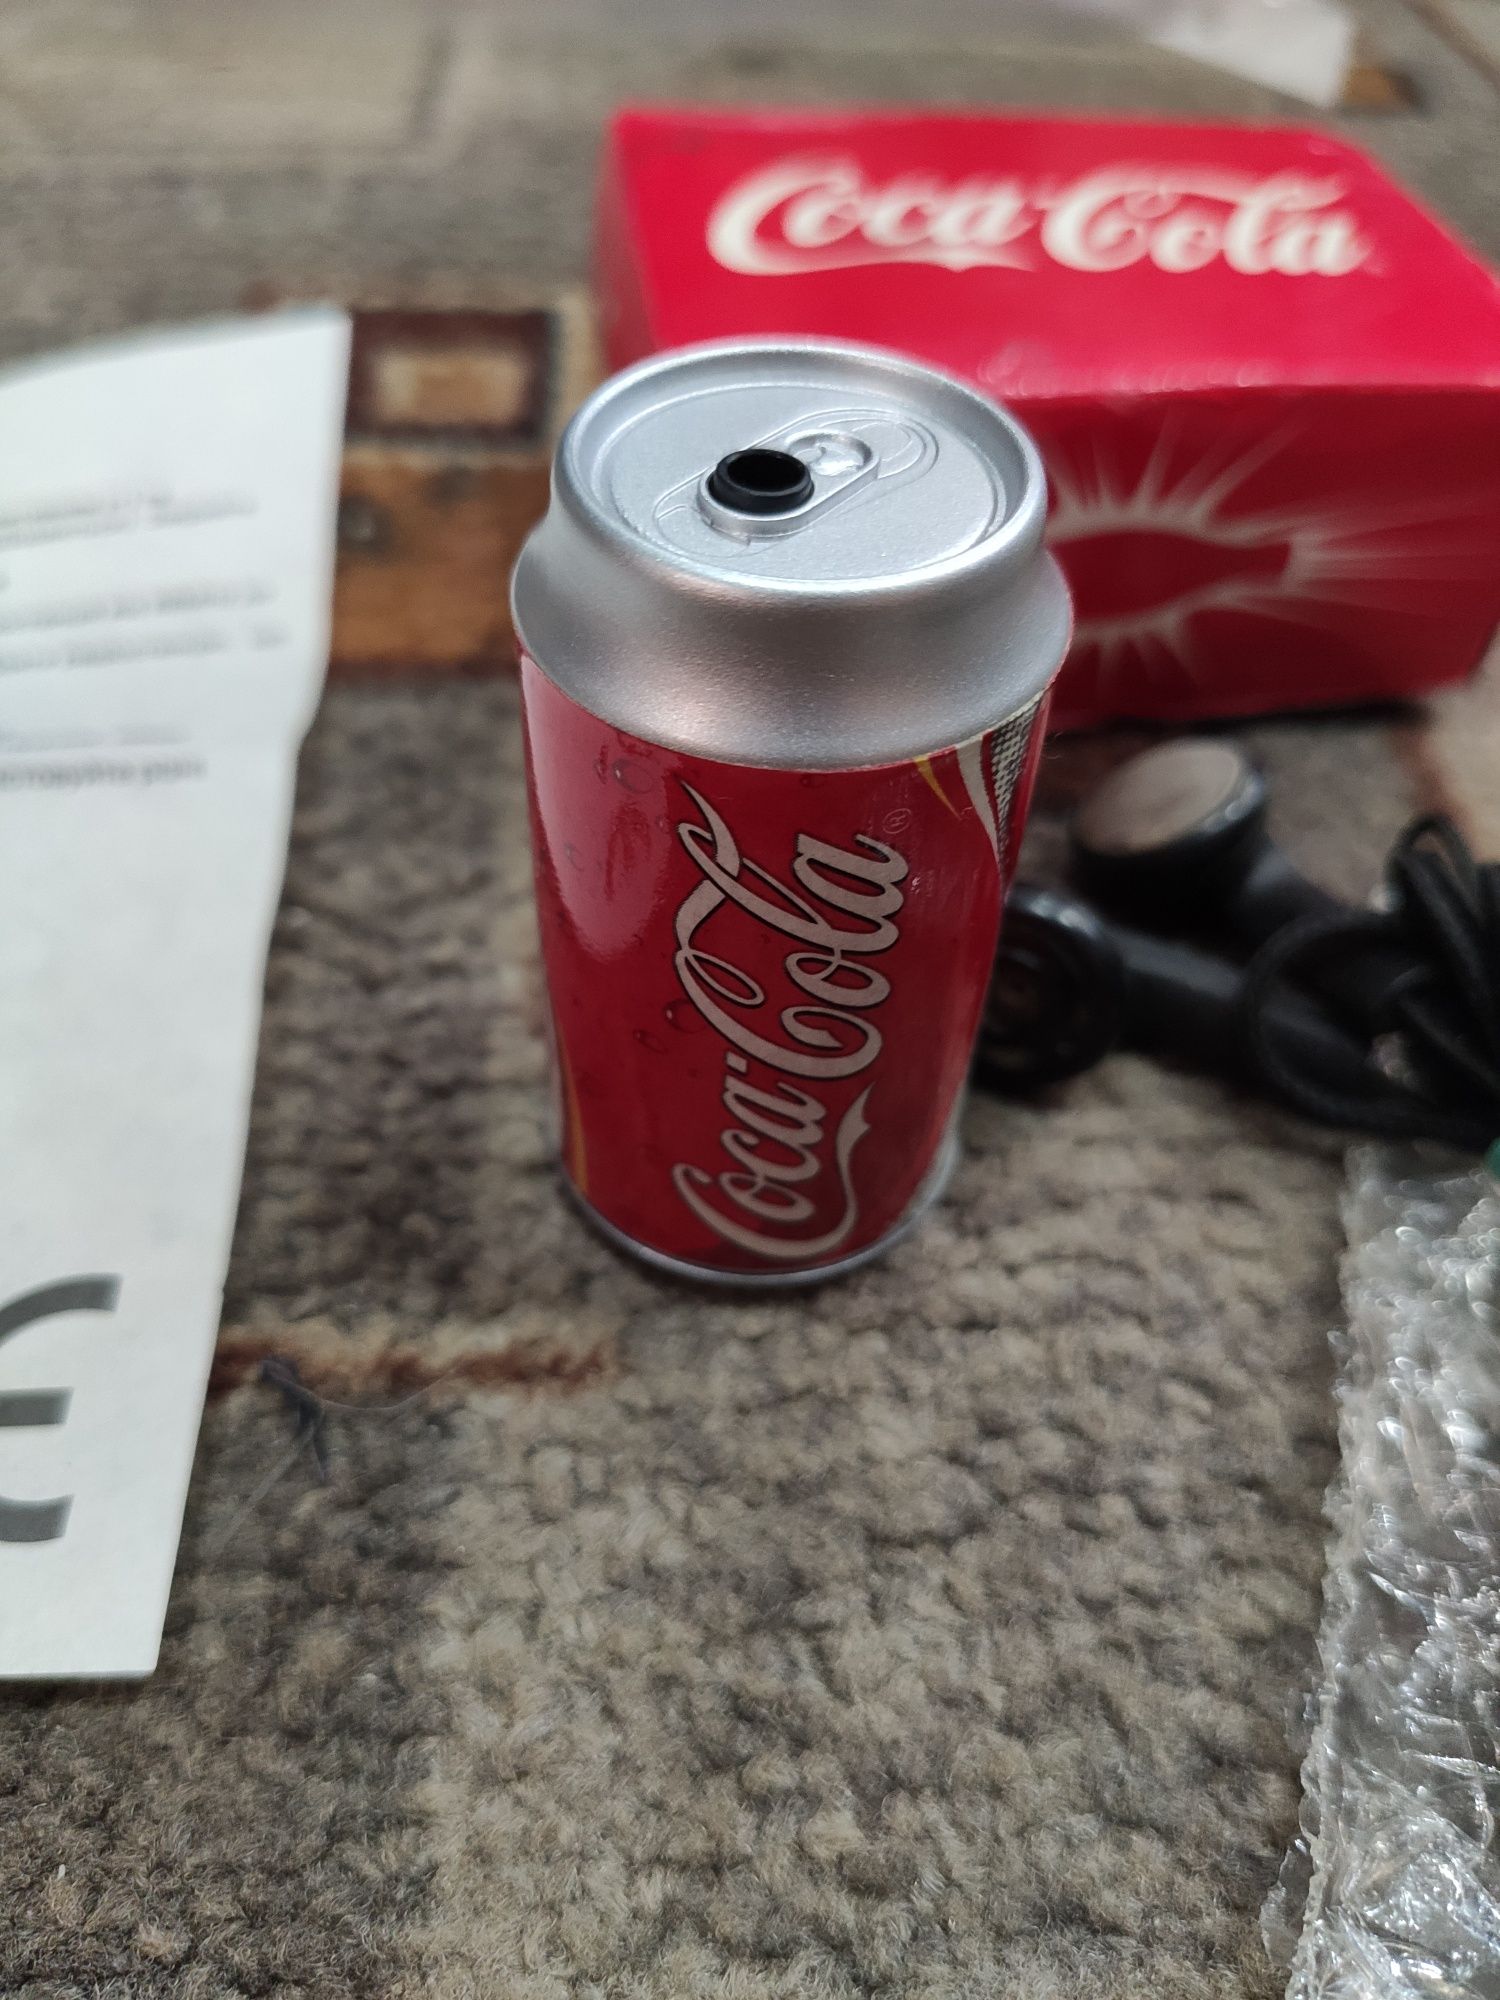 Плеер -радио Coca cola почти винтаж